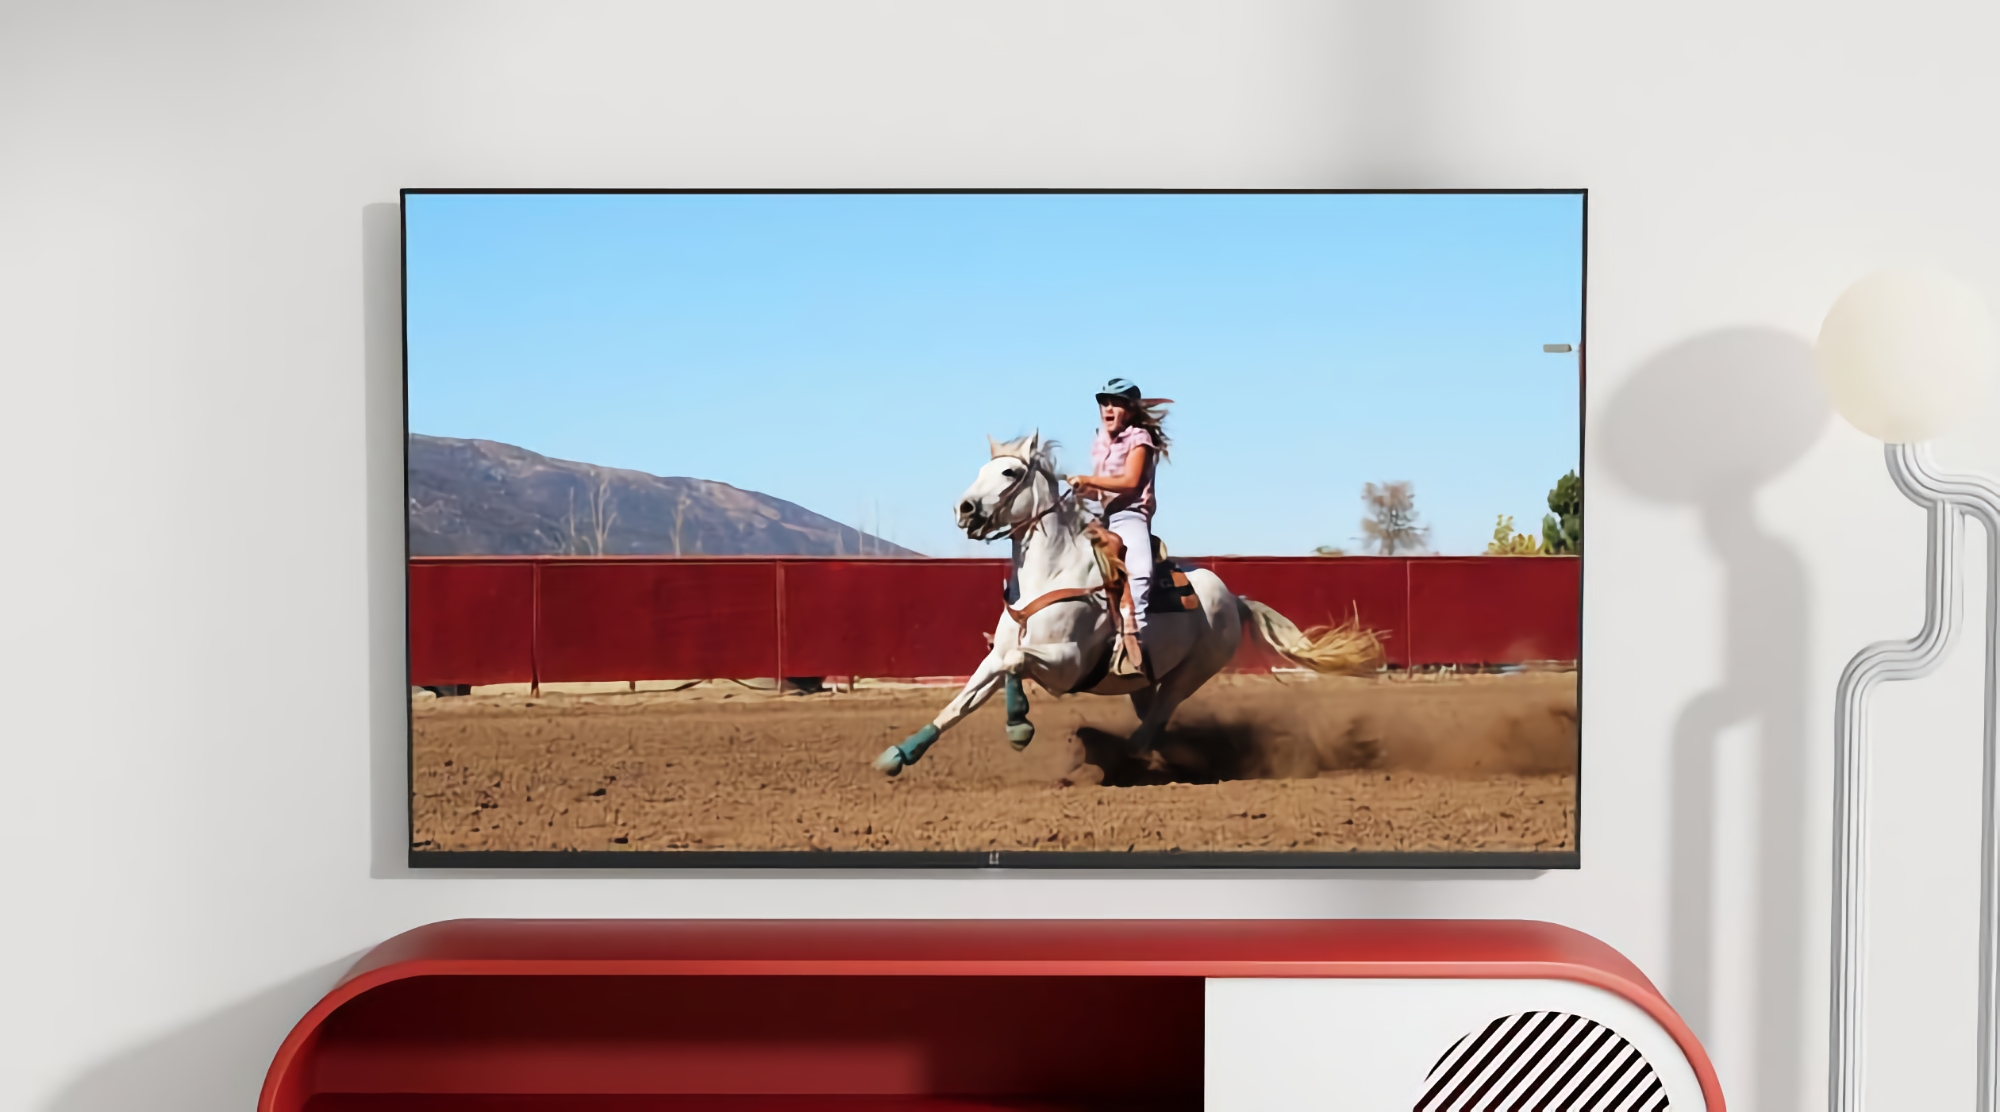 Інсайдер: OnePlus готує до виходу новий 55-дюймовий смарт-телевізор з LED-екраном